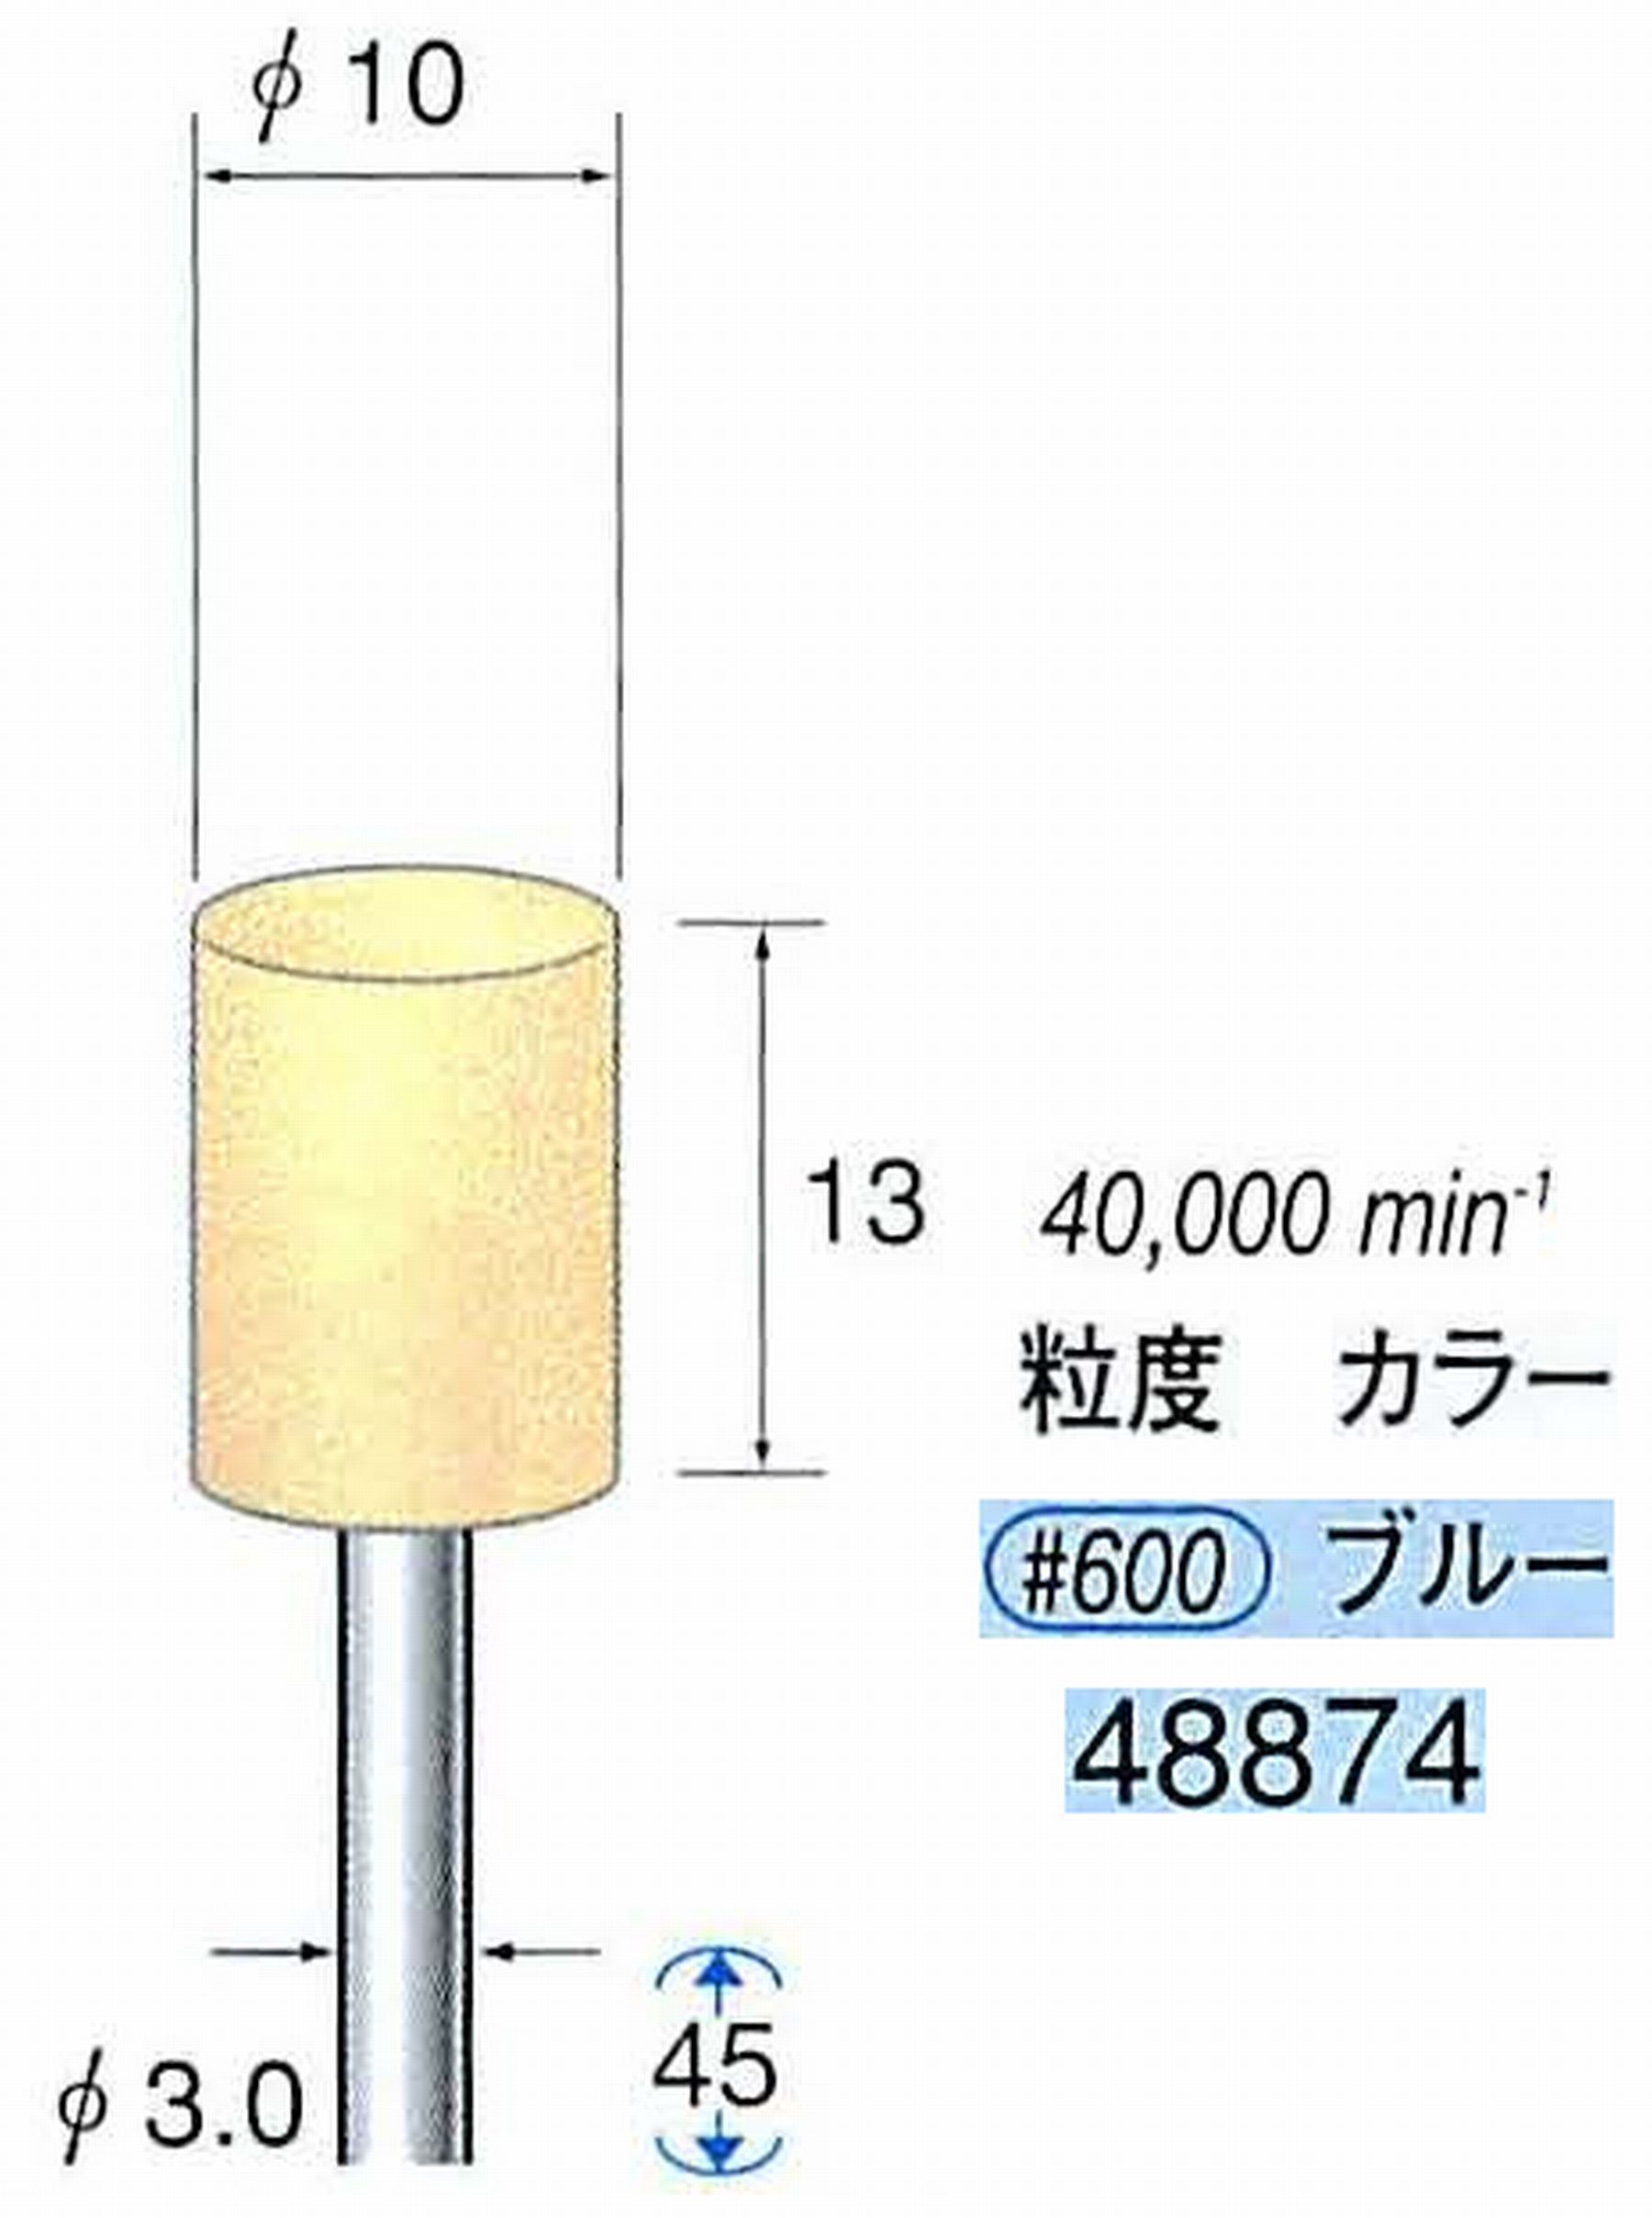 ナカニシ/NAKANISHI ポリッシュサンダー 軸径(シャンク)φ3.0mm 48874